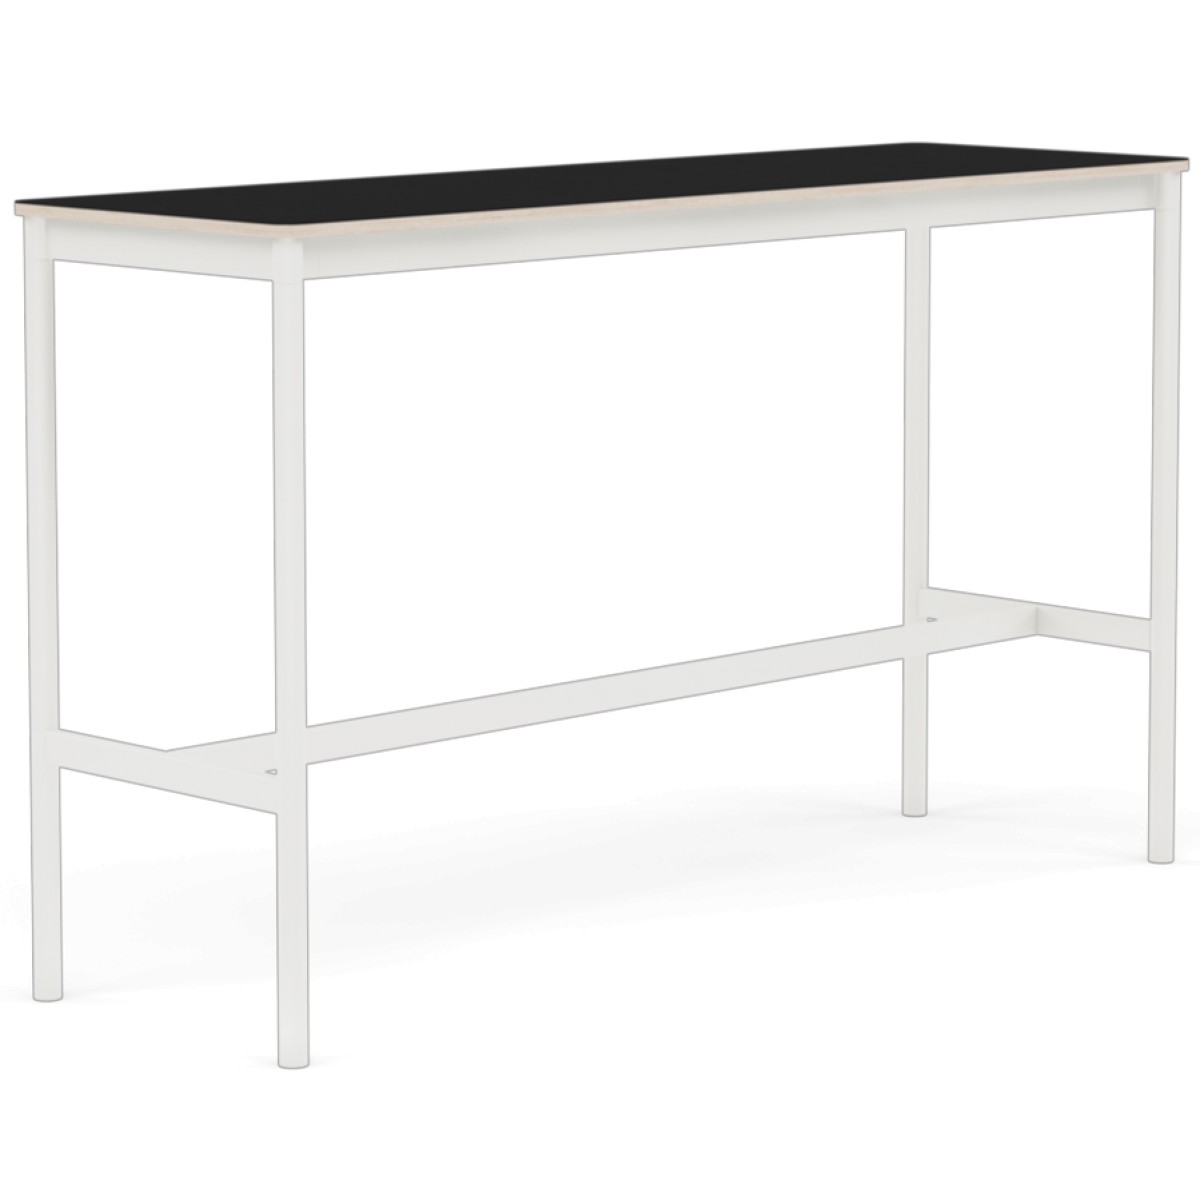 Base High Table / 160 x 50 cm